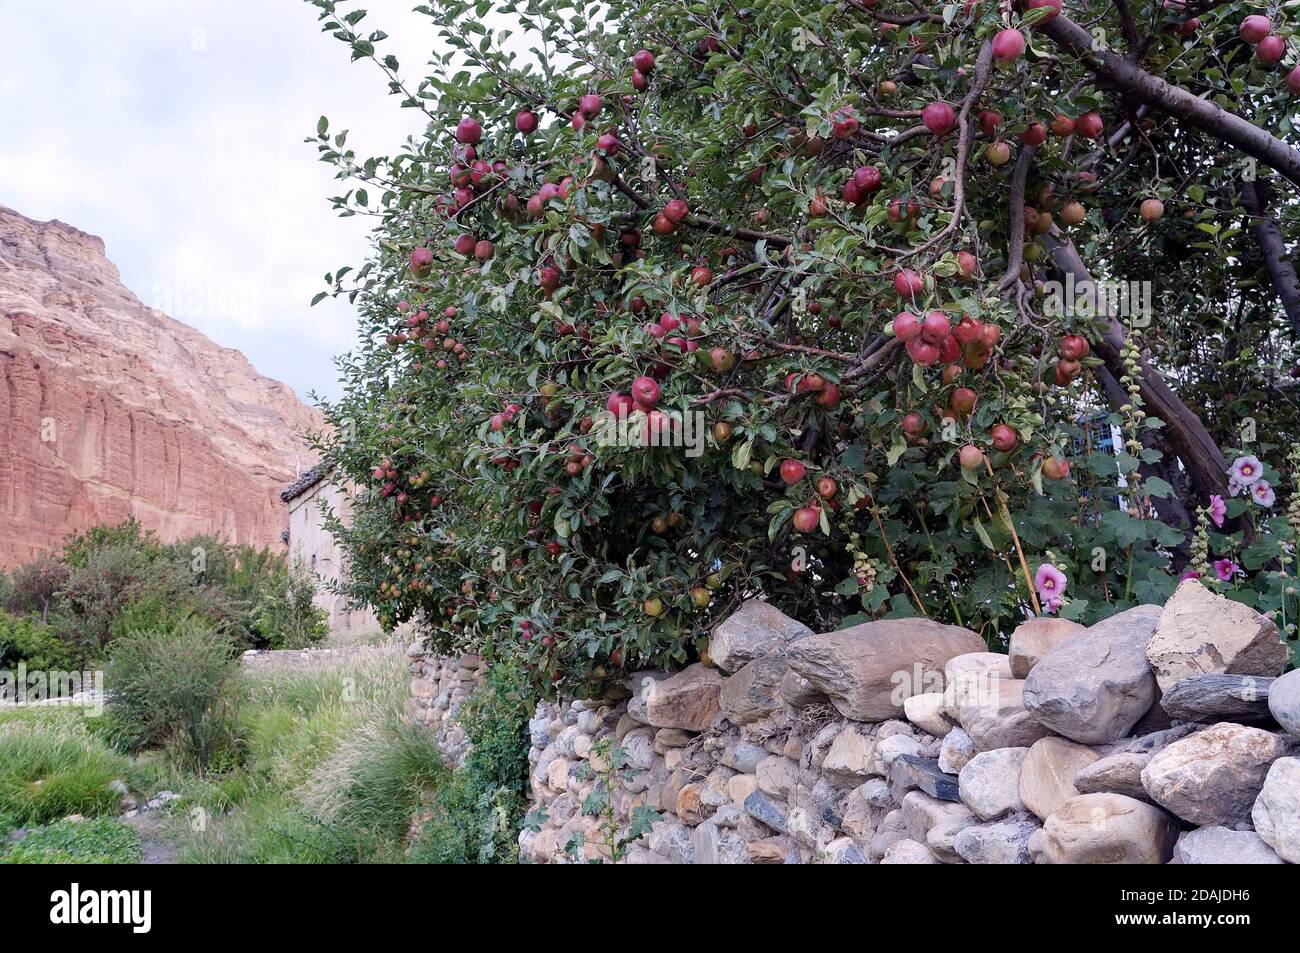 Albero di mele con frutto della maturazione di un muro di pietra sullo sfondo della roccia rossa di Chusang. Nepal, Mustang superiore. Foto Stock